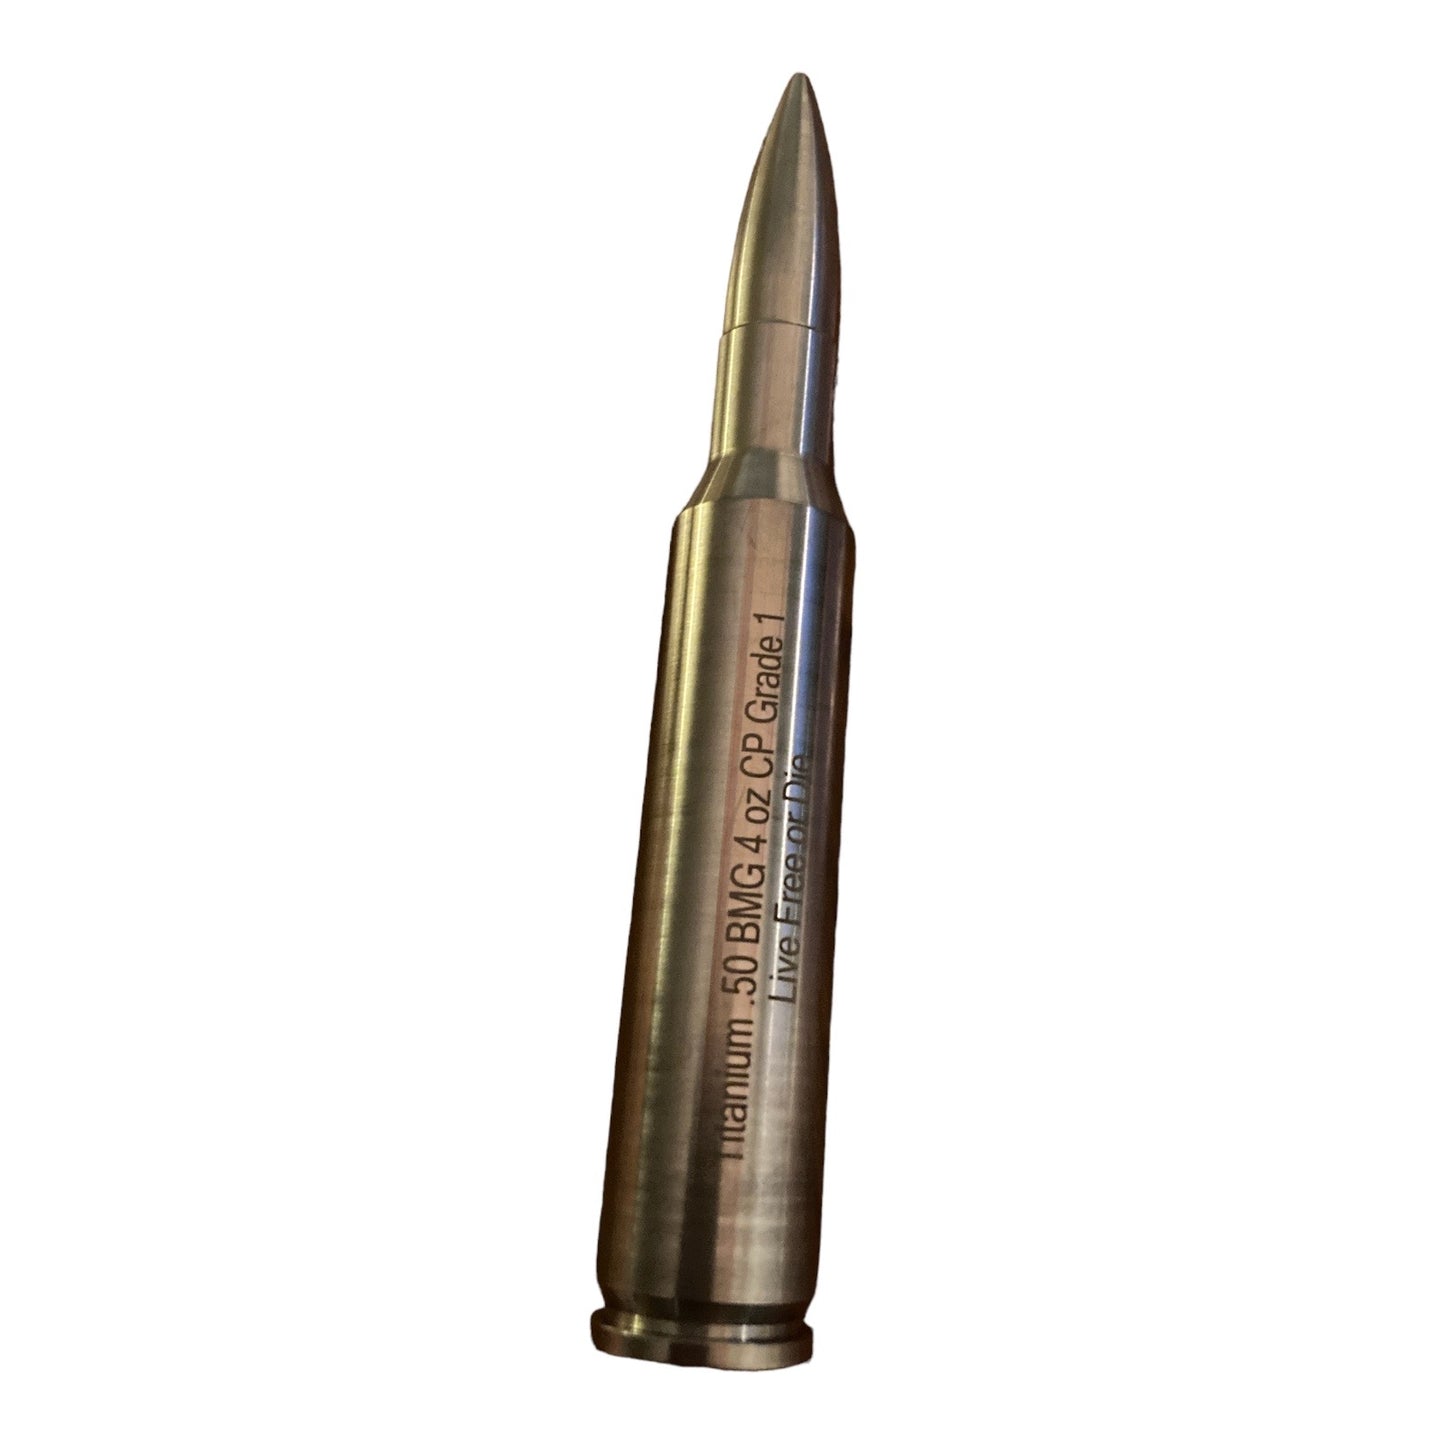 Titanium BMG Bullet 2nd Amendment Lot - 4 oz Titanium Bullet (20 oz total)